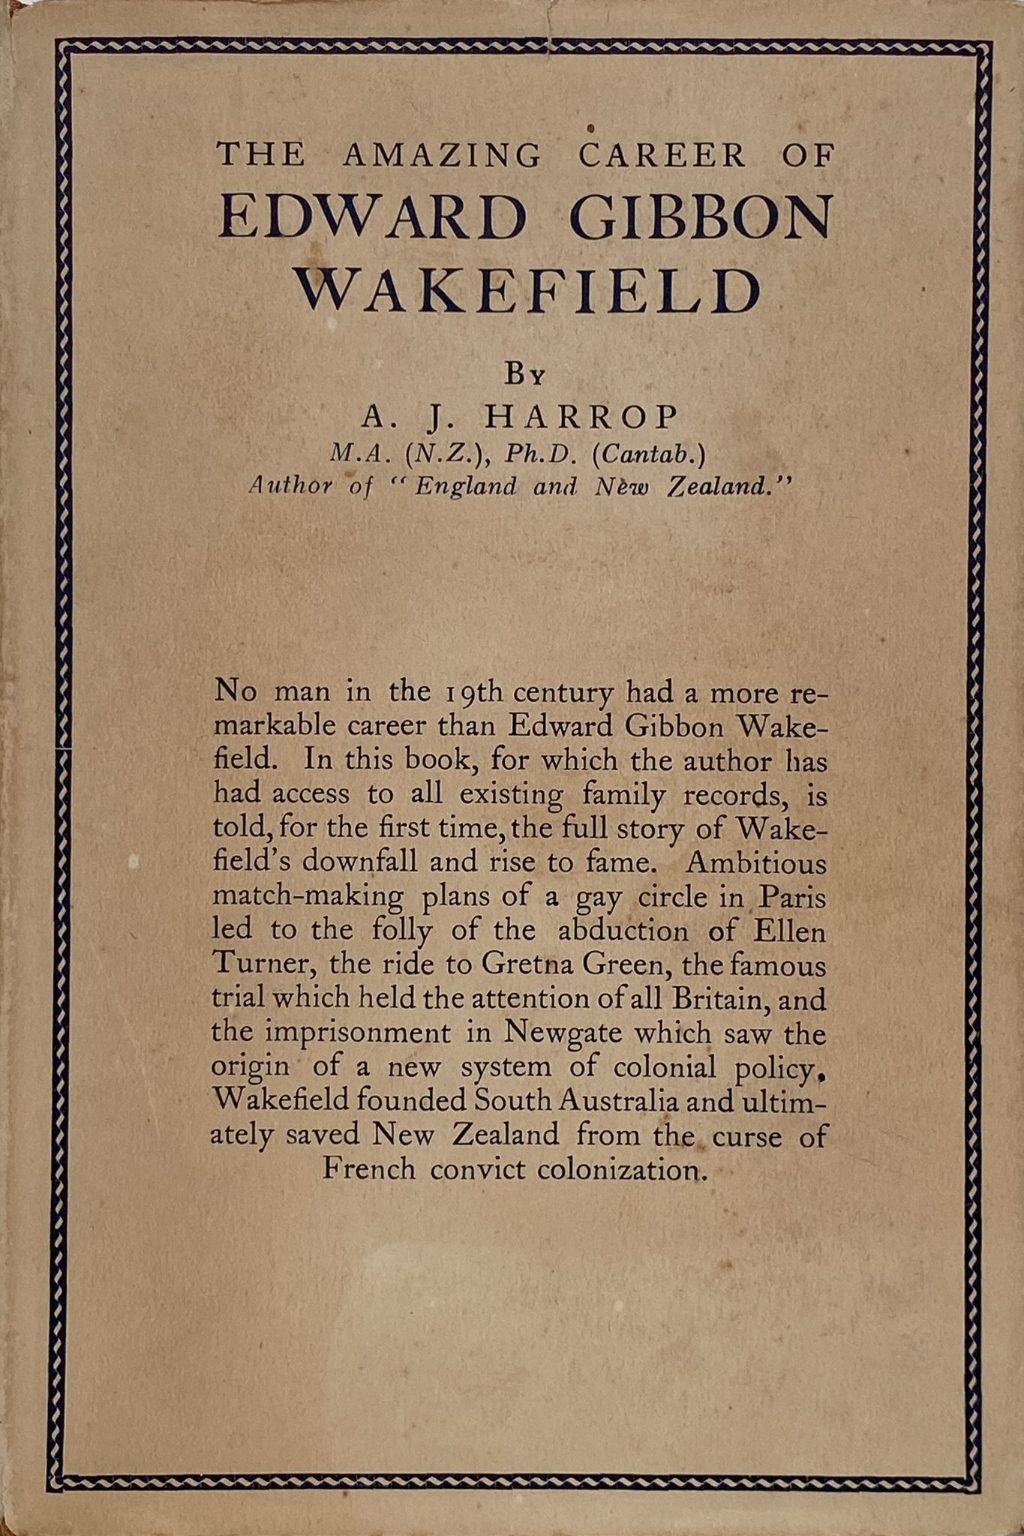 EDWARD GIBBON WAKEFIELD: The Amazing Career of